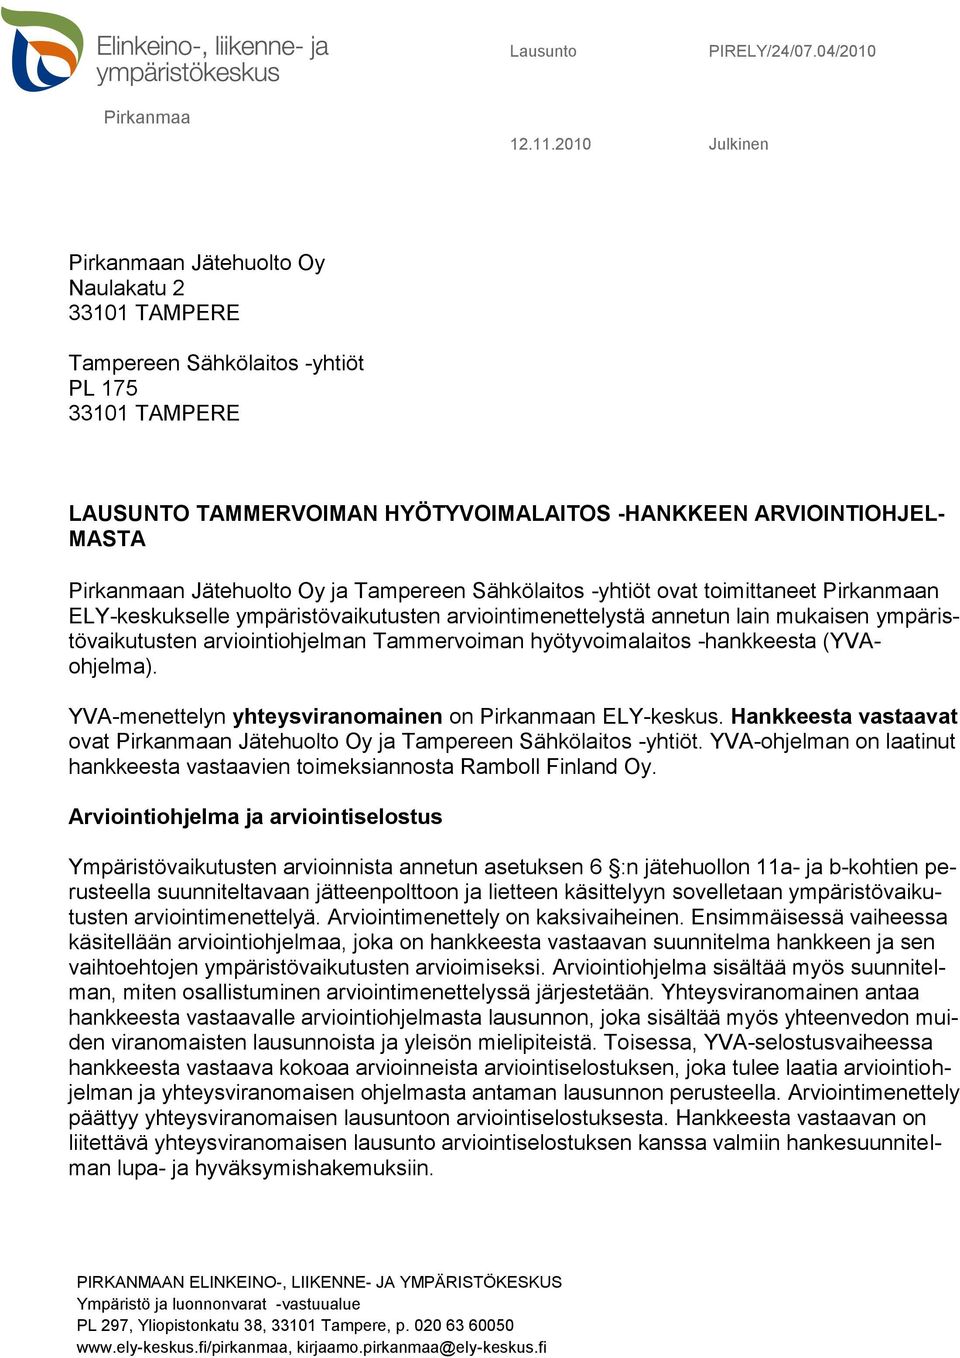 Jätehuolto Oy ja Tampereen Sähkölaitos -yhtiöt ovat toimittaneet Pirkanmaan ELY-keskukselle ympäristövaikutusten arviointimenettelystä annetun lain mukaisen ympäristövaikutusten arviointiohjelman